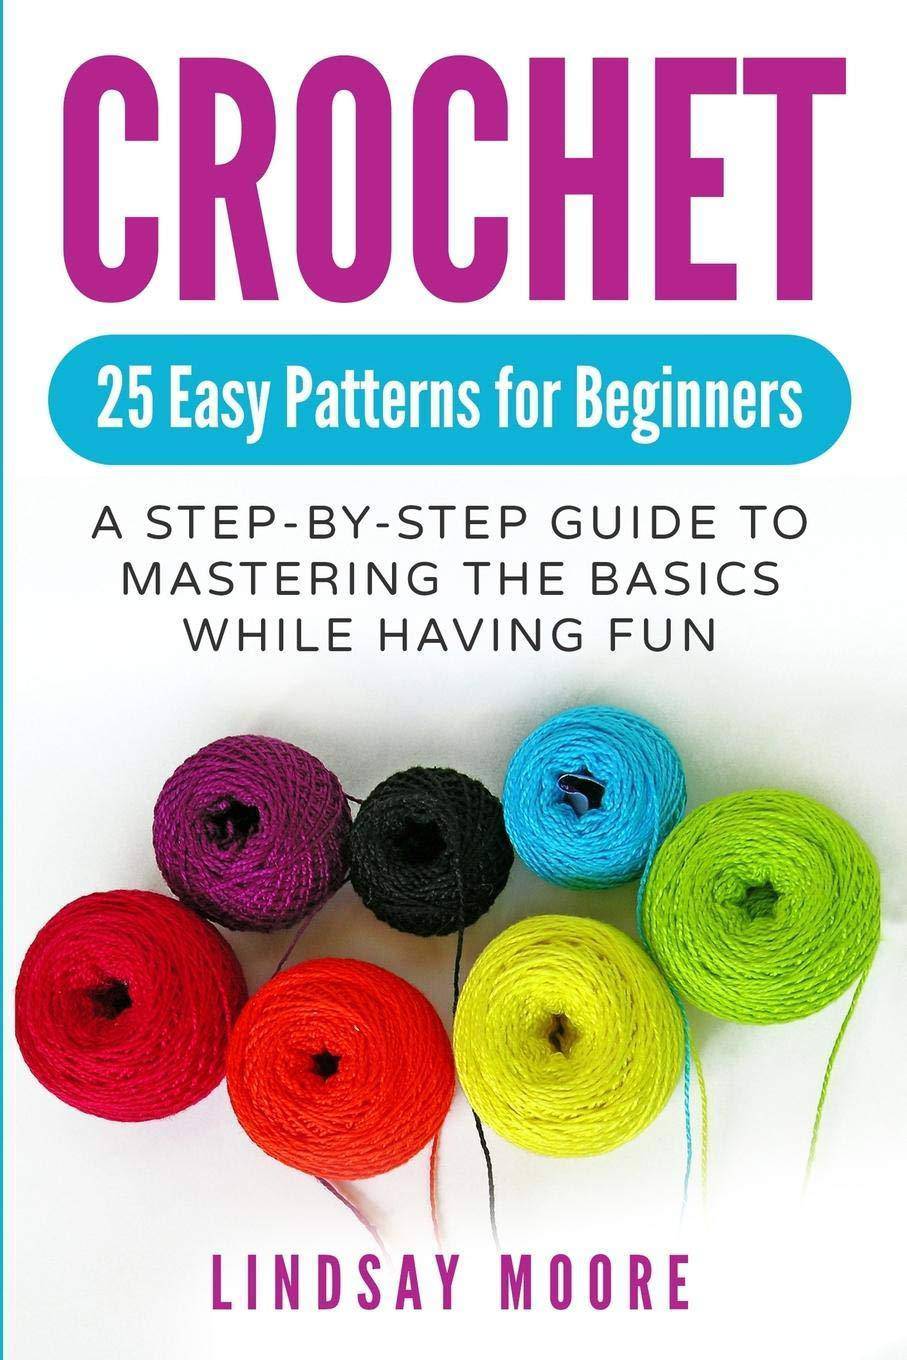 Crochet: 25 Easy Patterns for Beginners - SureShot Books Publishing LLC